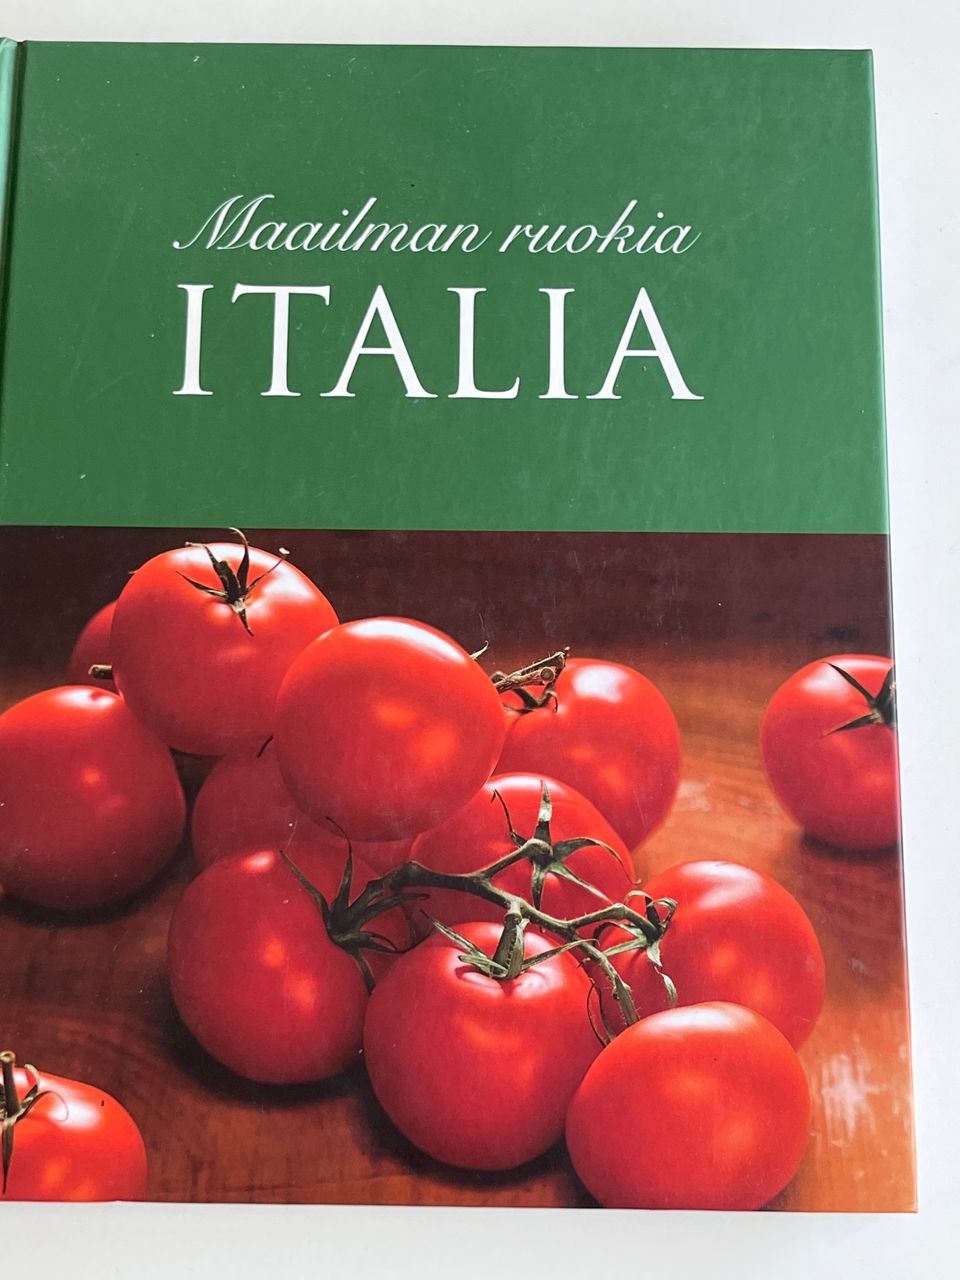 Italia ruokia sieltä. Aitoa Italialaista ruokaa.